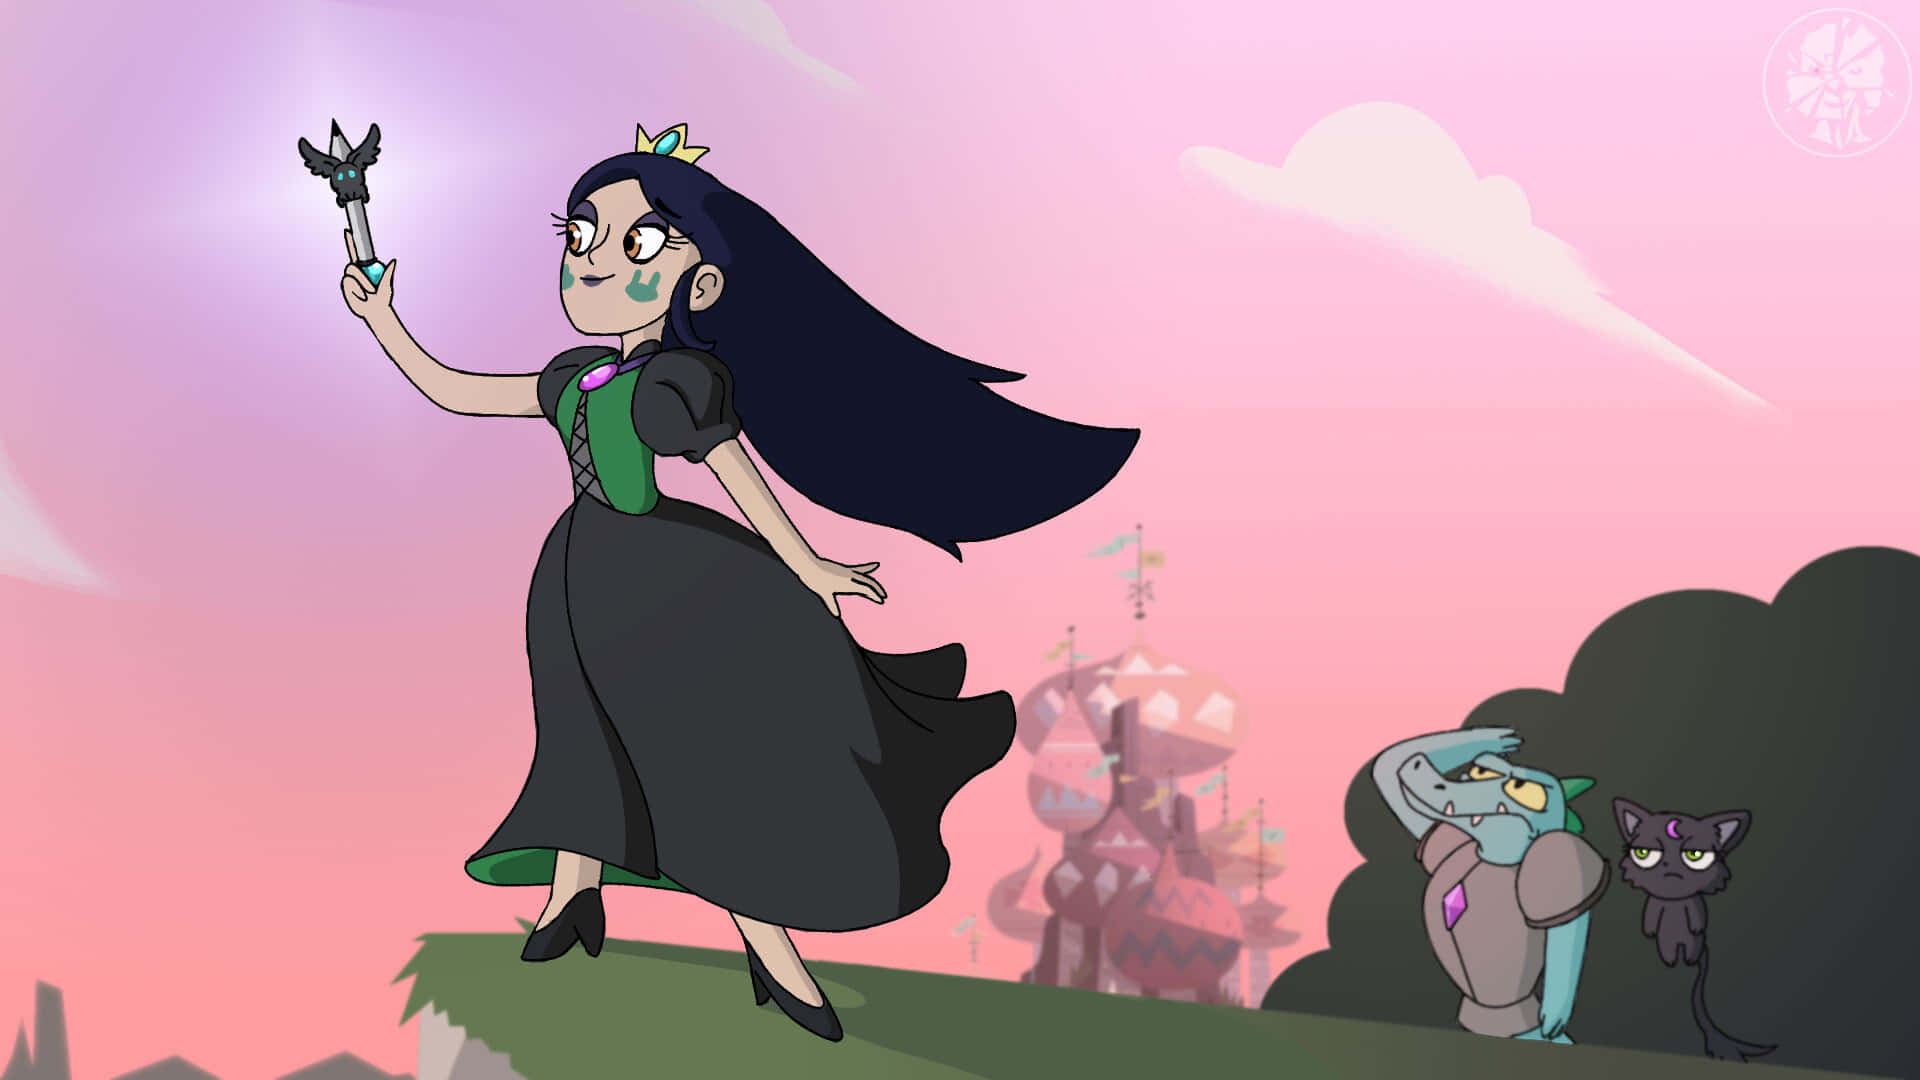 A Cartoon Of A Princess With A Wand